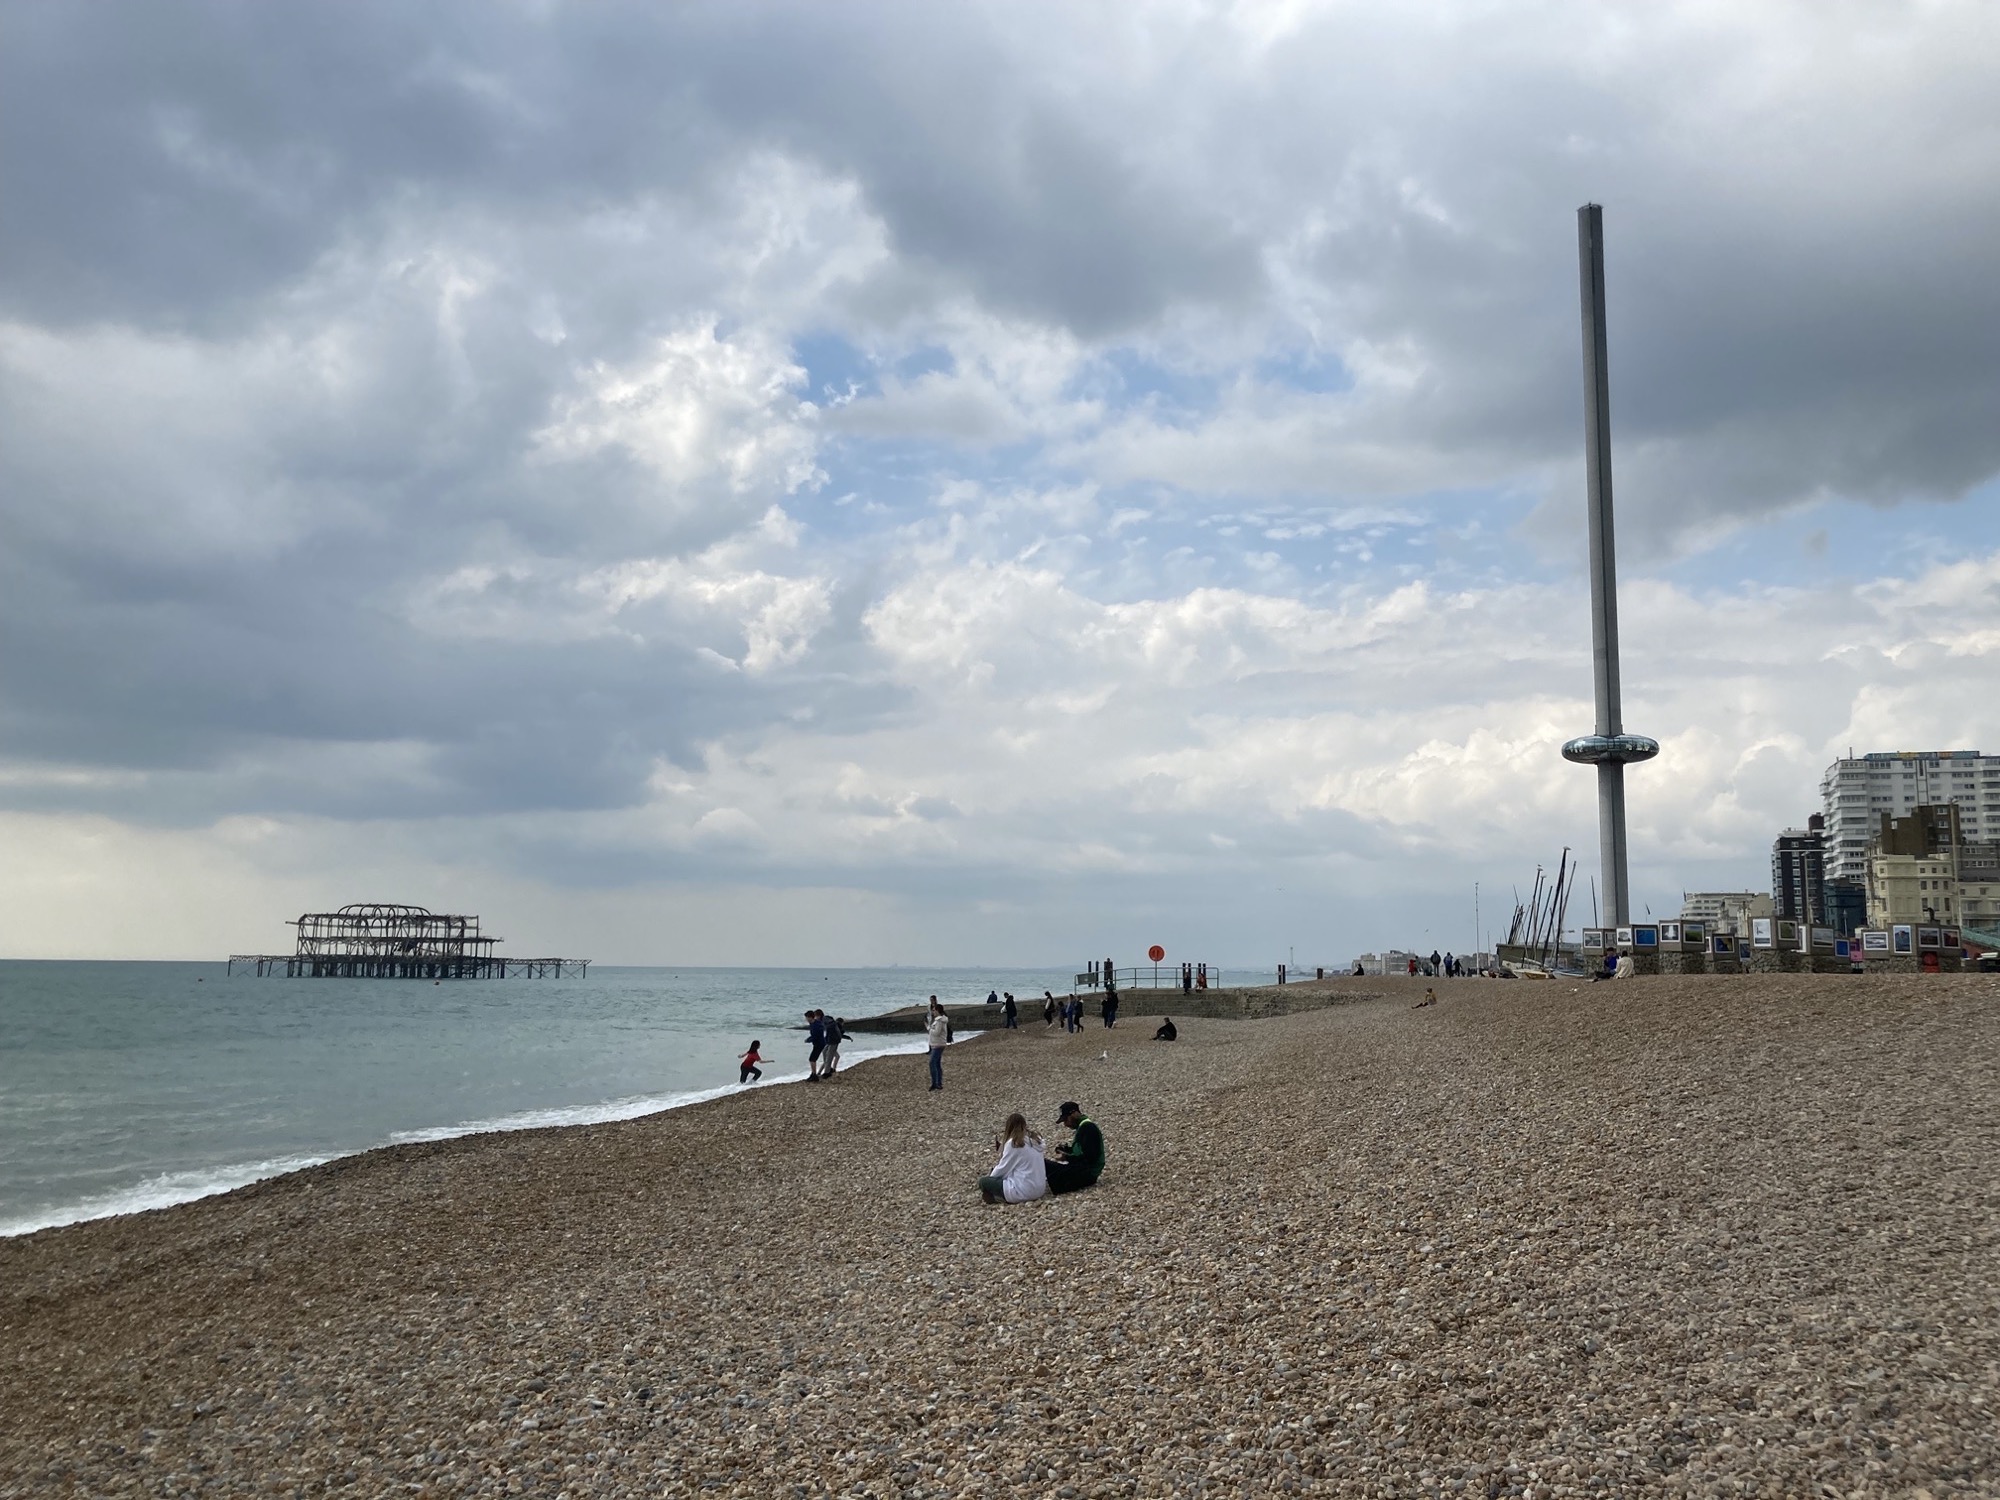 Strand in Brighton, links das Gerippe des abgebrannten West Piers, rechts im Hintergrund ein futuristischer Turm mit einer Art Donut drumherum, der i360 Tower